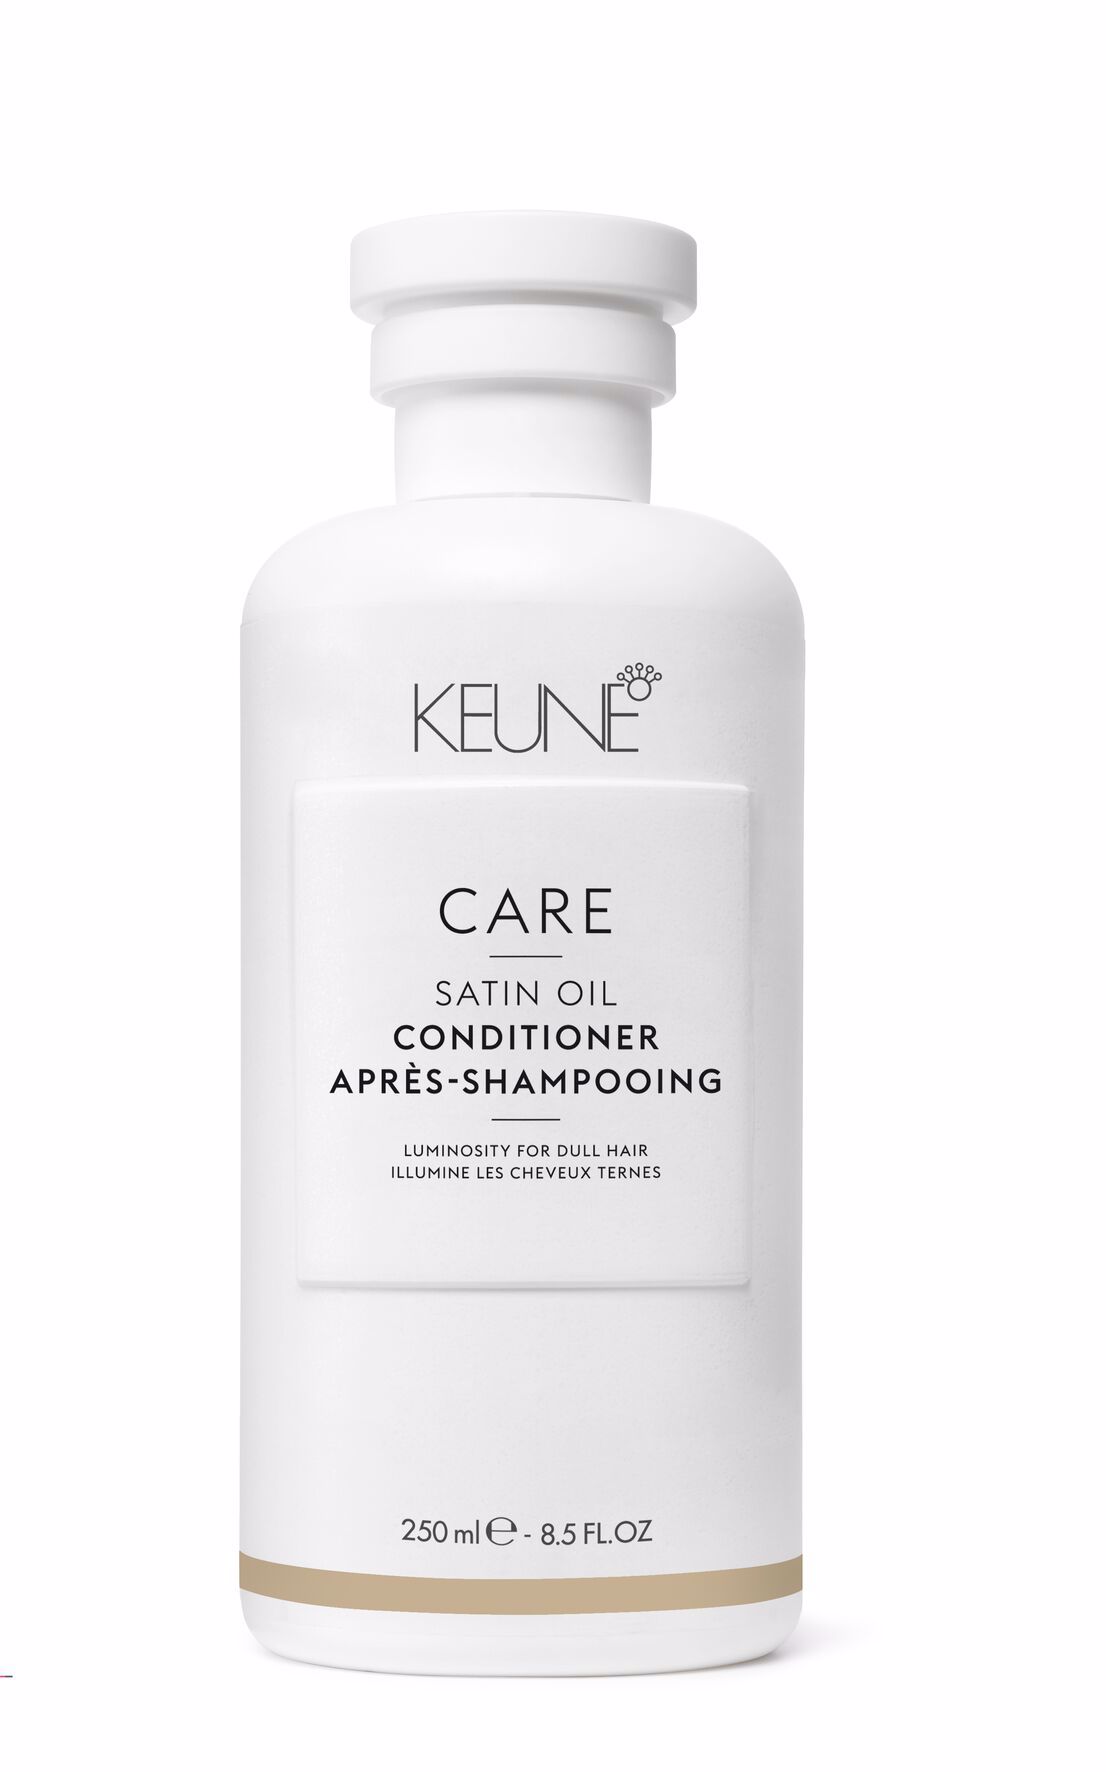 Satin Oil Conditioner est idéal pour les cheveux ternes et secs. Grâce à sa formule innovante et légère, il laisse vos cheveux frais, sains et brillants. Disponible sur  keune.ch.